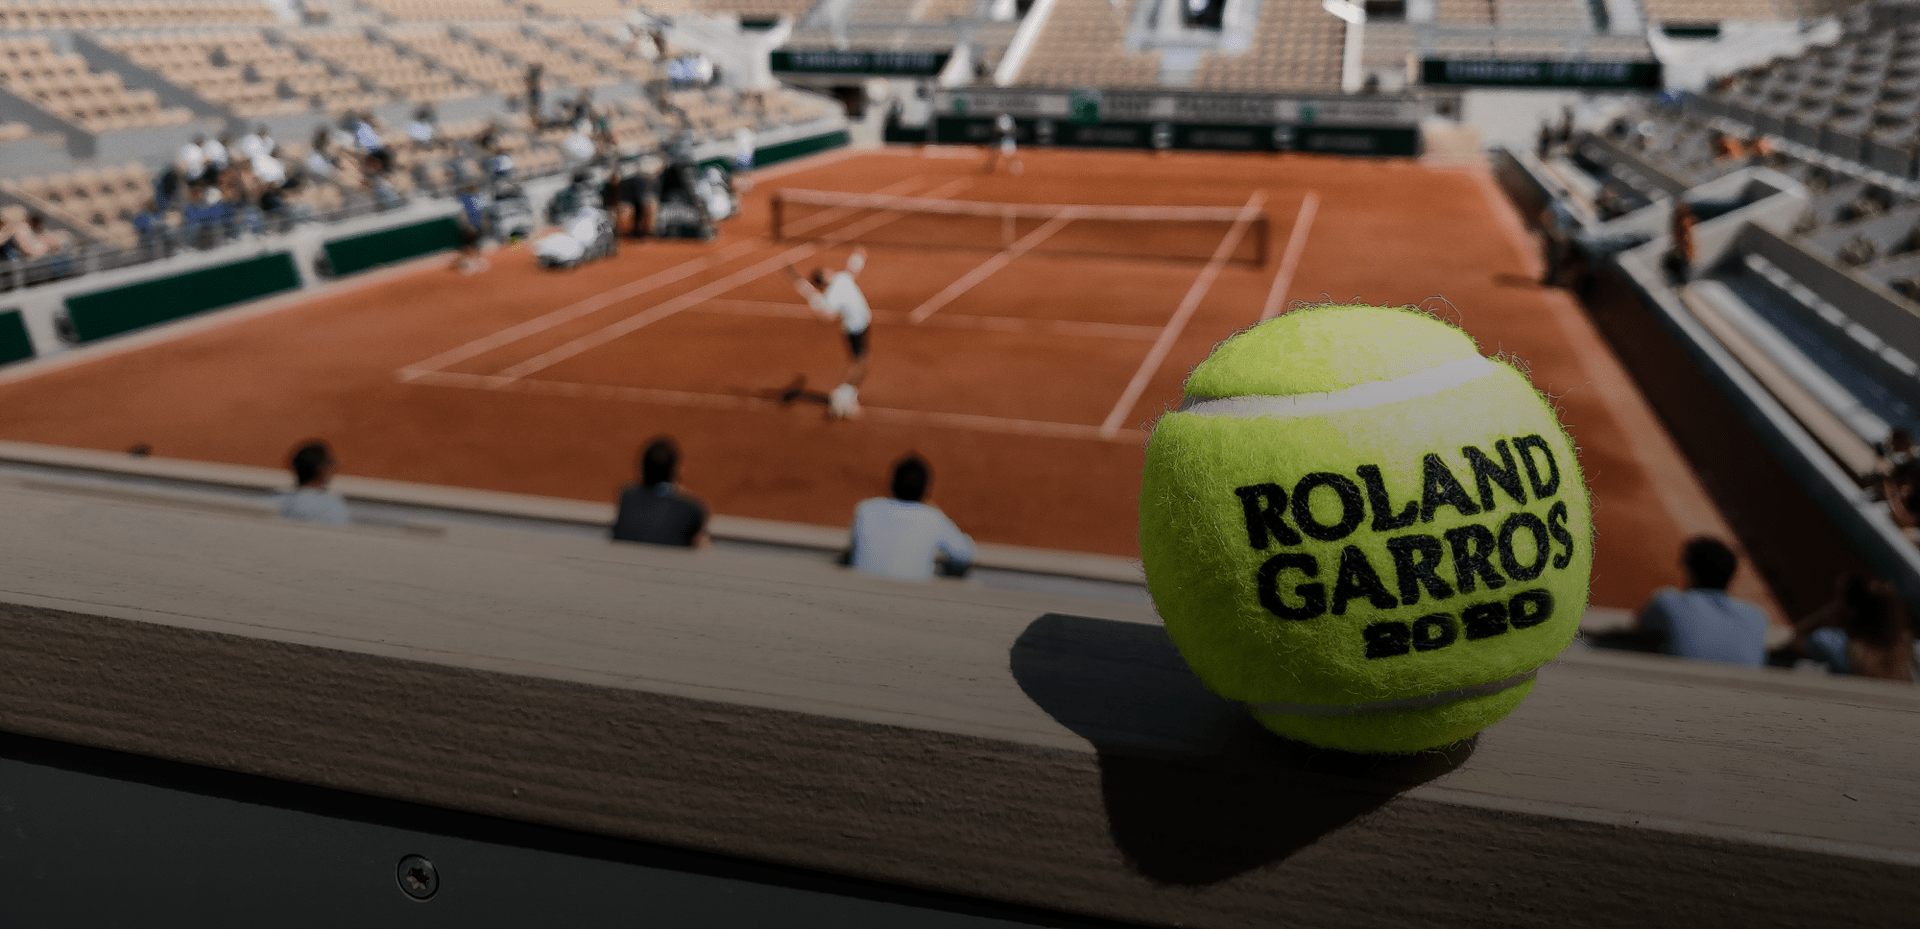 Теннисный корт чемпионата Roland Garros2